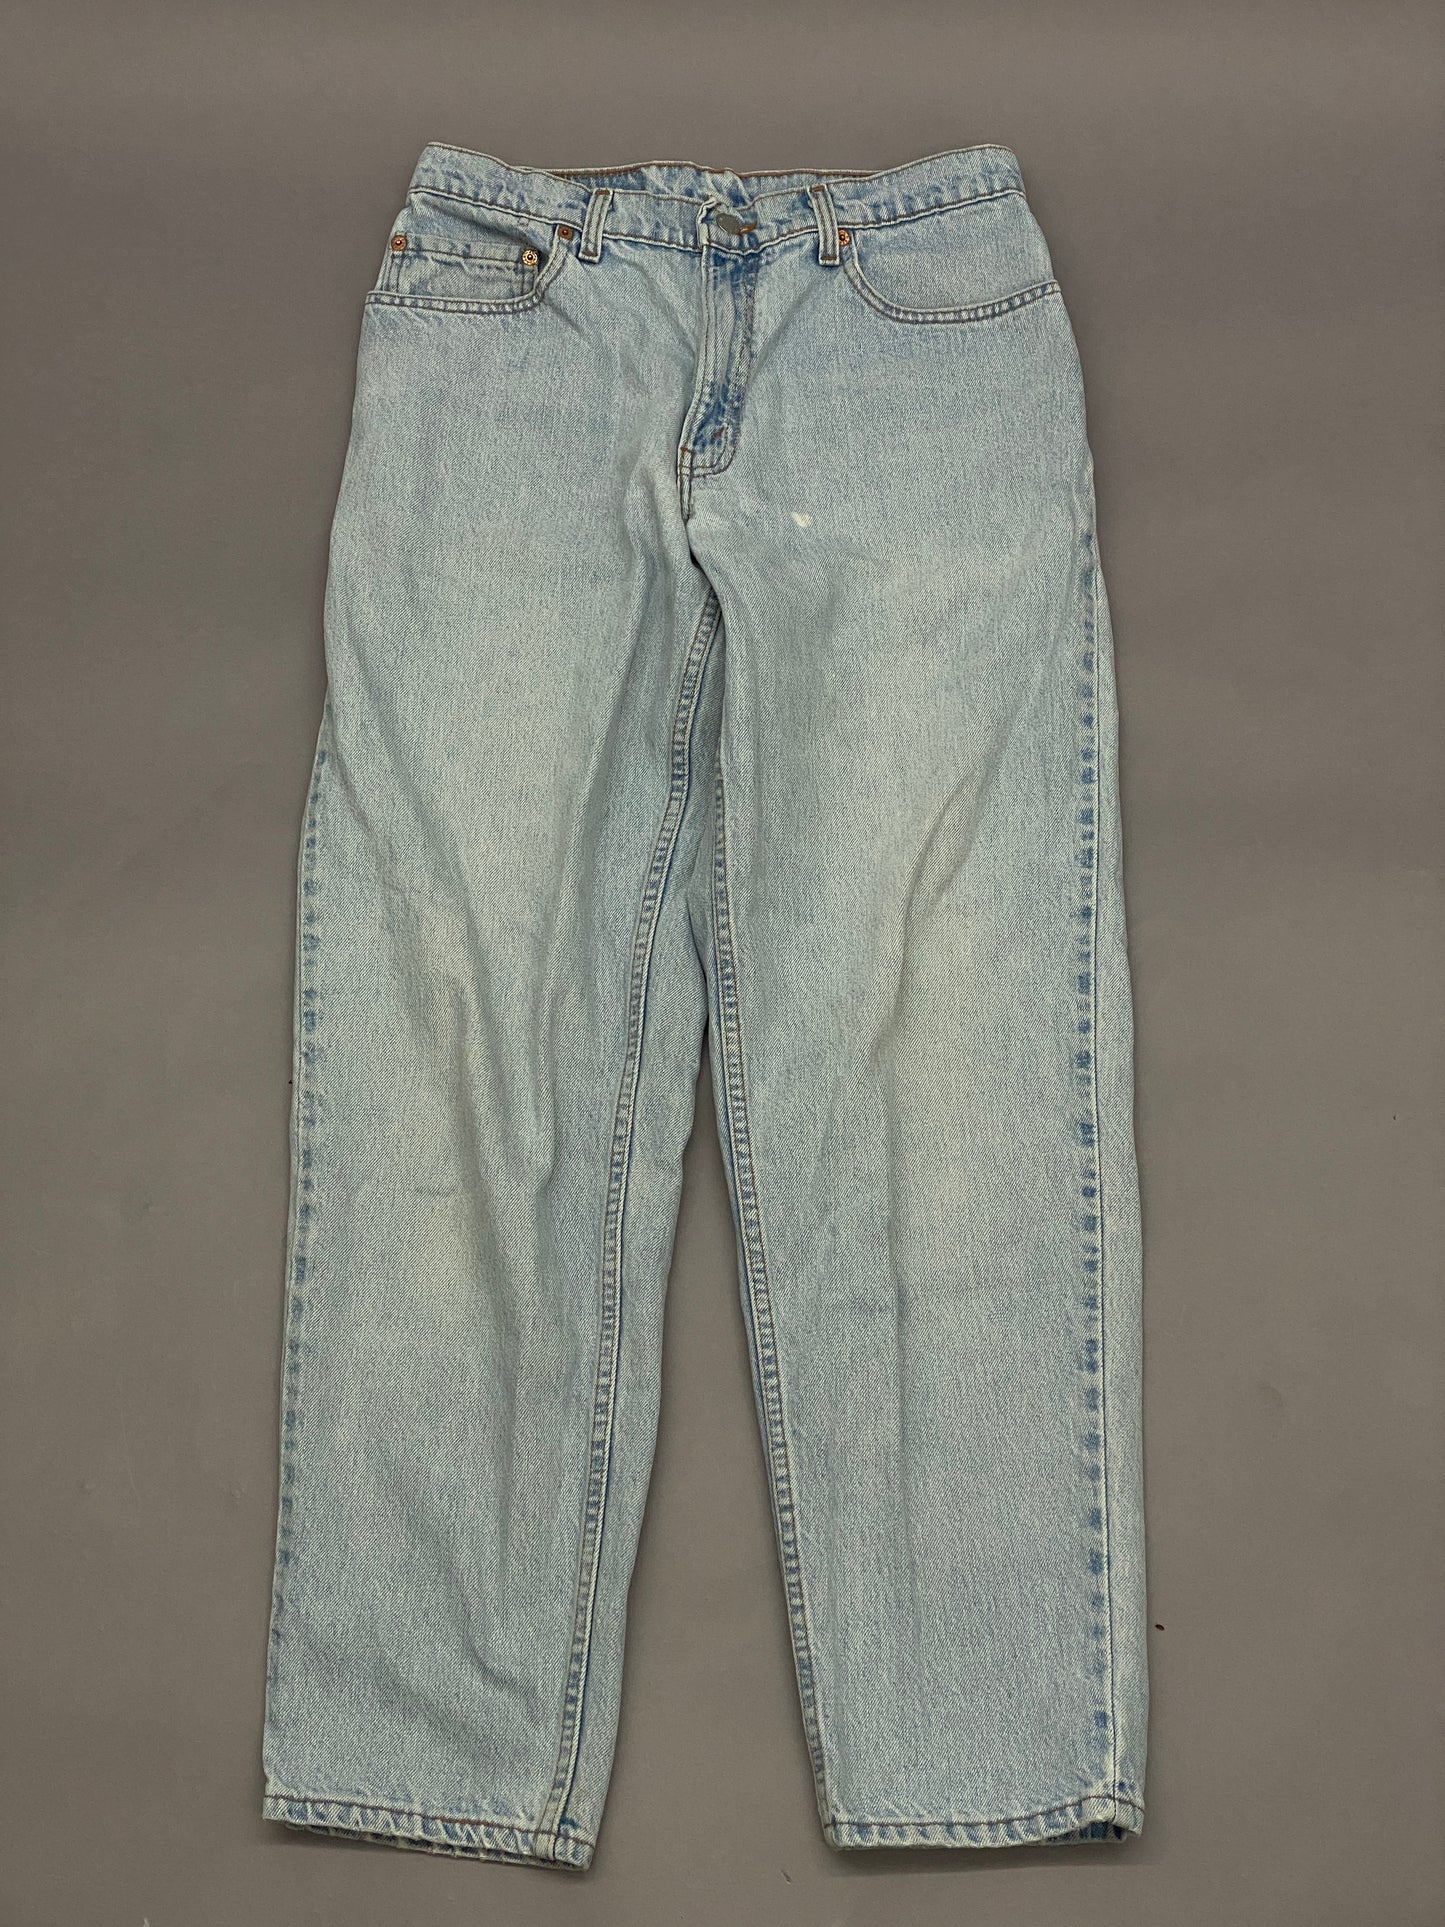 Levis 560 Vintage Blue Jeans - 32 x 32